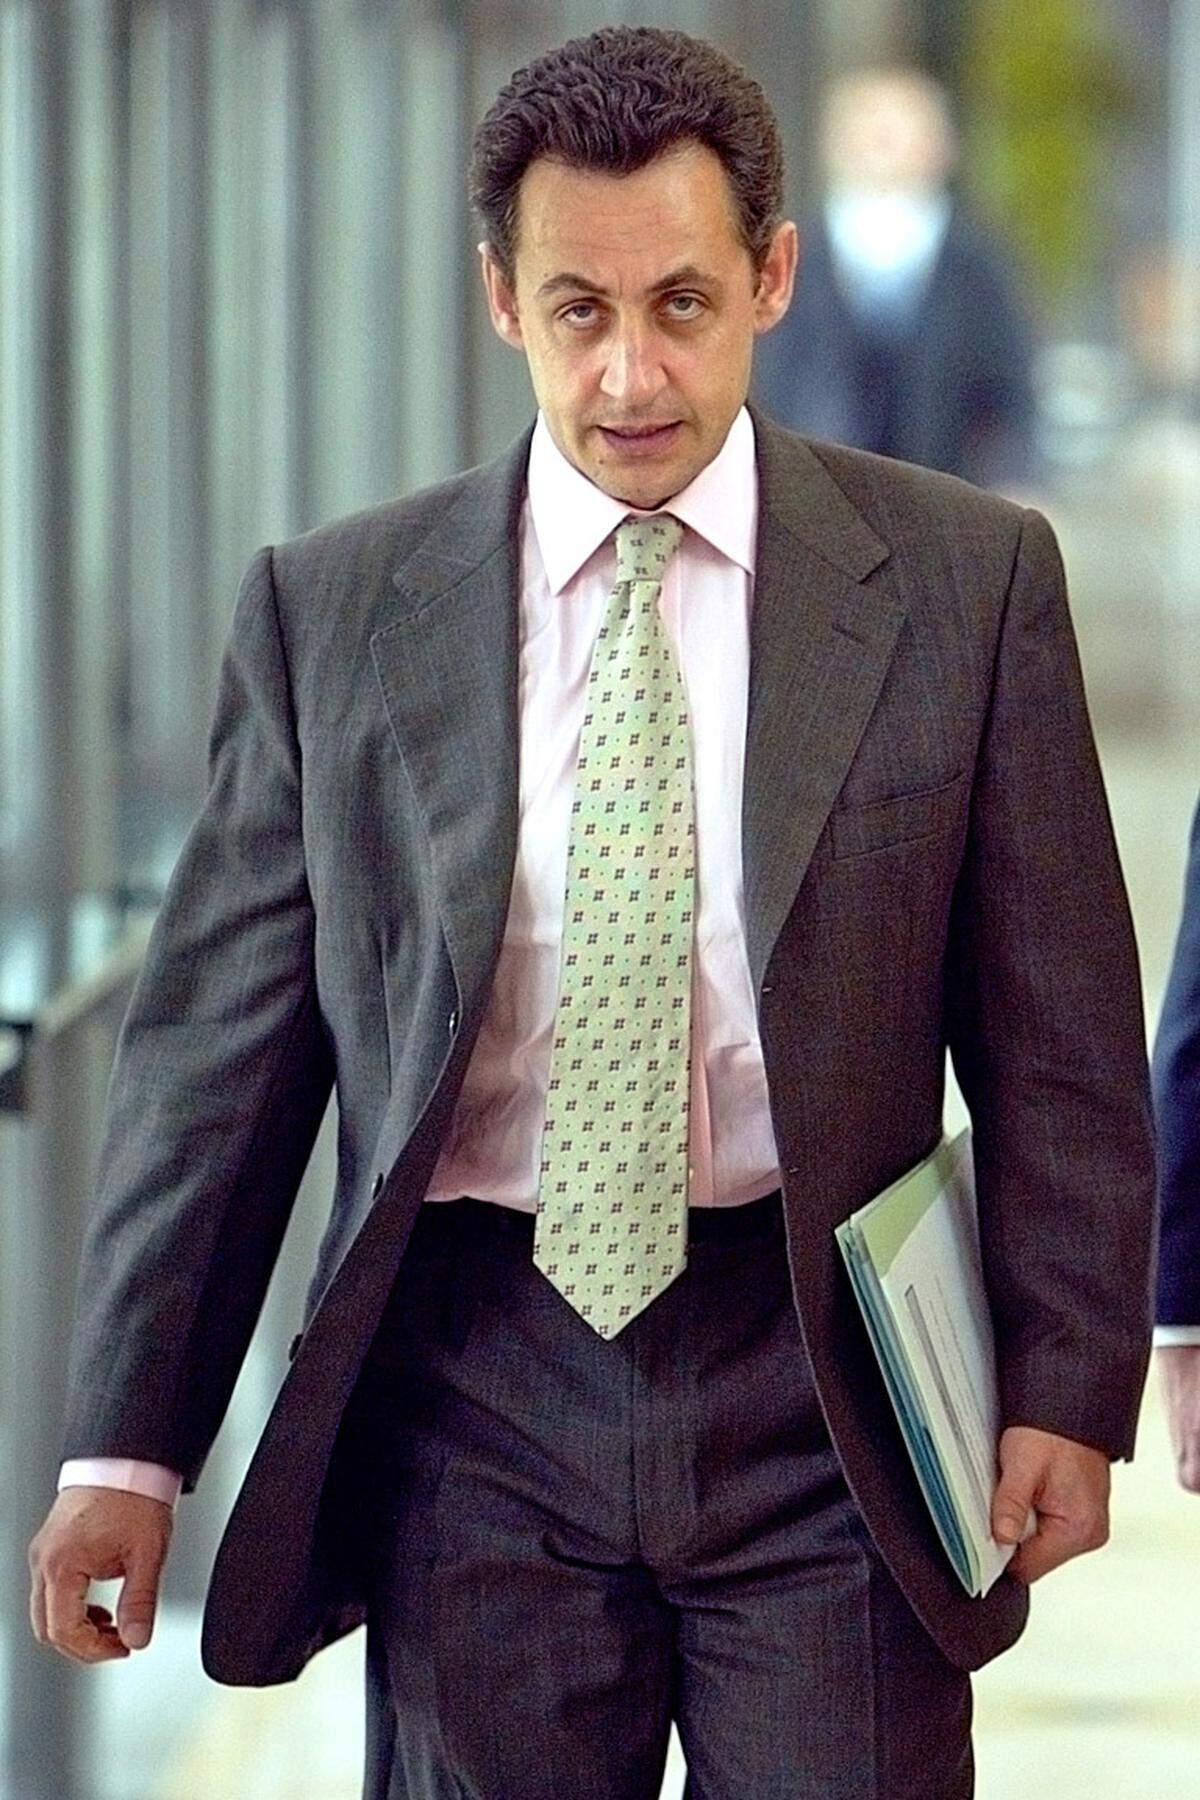 Nach der Erholungstour setzte Sarkozy in den ersten 100 Tagen seiner Amtszeit ein ganzes Bündel von Maßnahmen durch: Steuererleichterungen, Zuzahlungen im Gesundheitswesen, Aushöhlung der 35-Stunden-Woche sowie das Ende der Frührente bei Staatskonzernen. Proteste der Gewerkschaften beeindruckten ihn nicht. Für seinen Aktionismus erhielt er die Spitznamen "Hyper-Präsident" und "Super-Sarko".